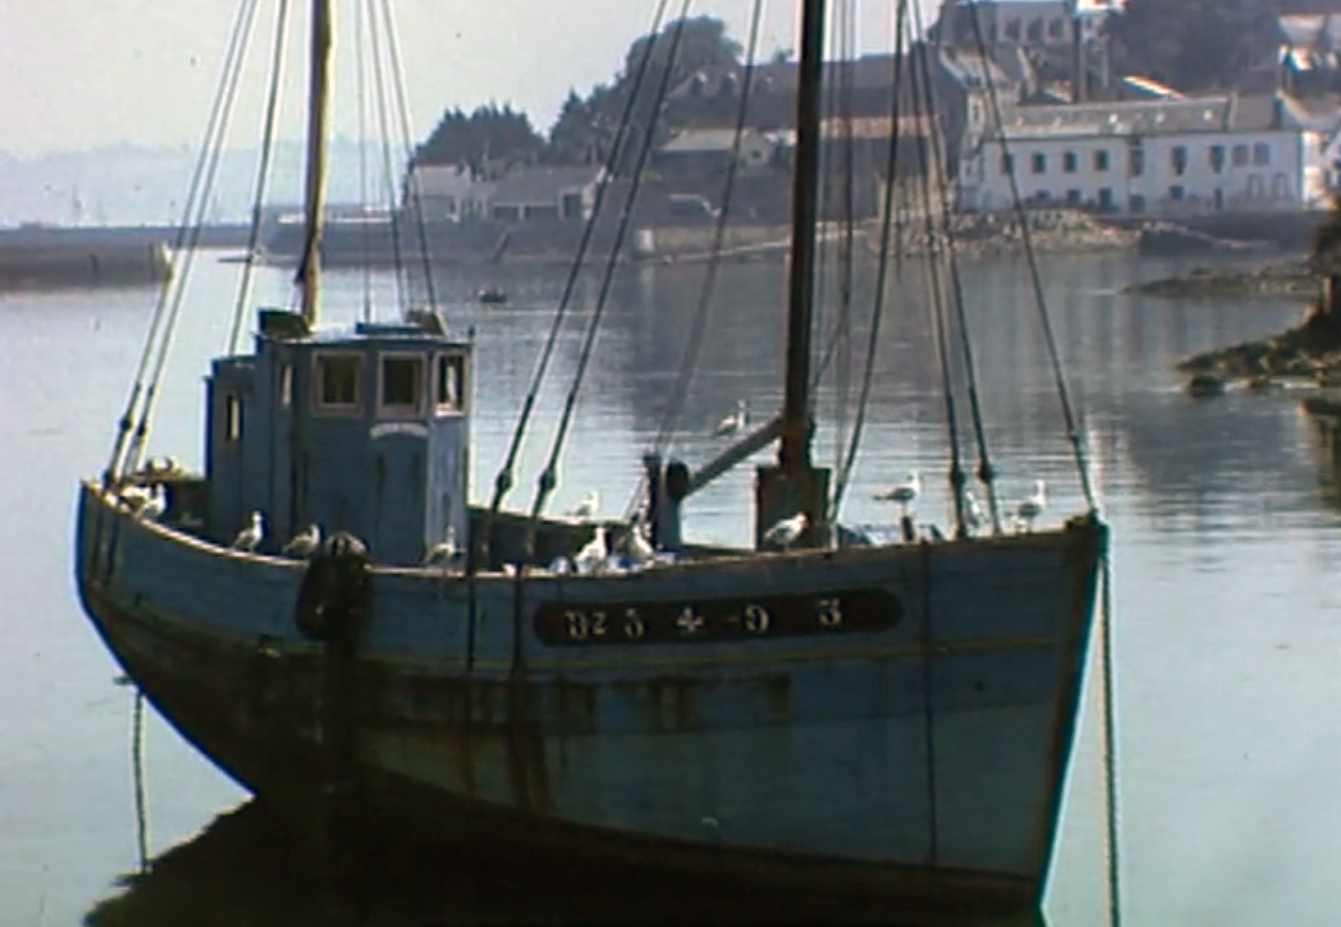 Source : Cinémathèque de Bretagne - Image extraite d'un film amateur de Fernand Le Garrec, "Baie de Douarnenez", vers 1956.